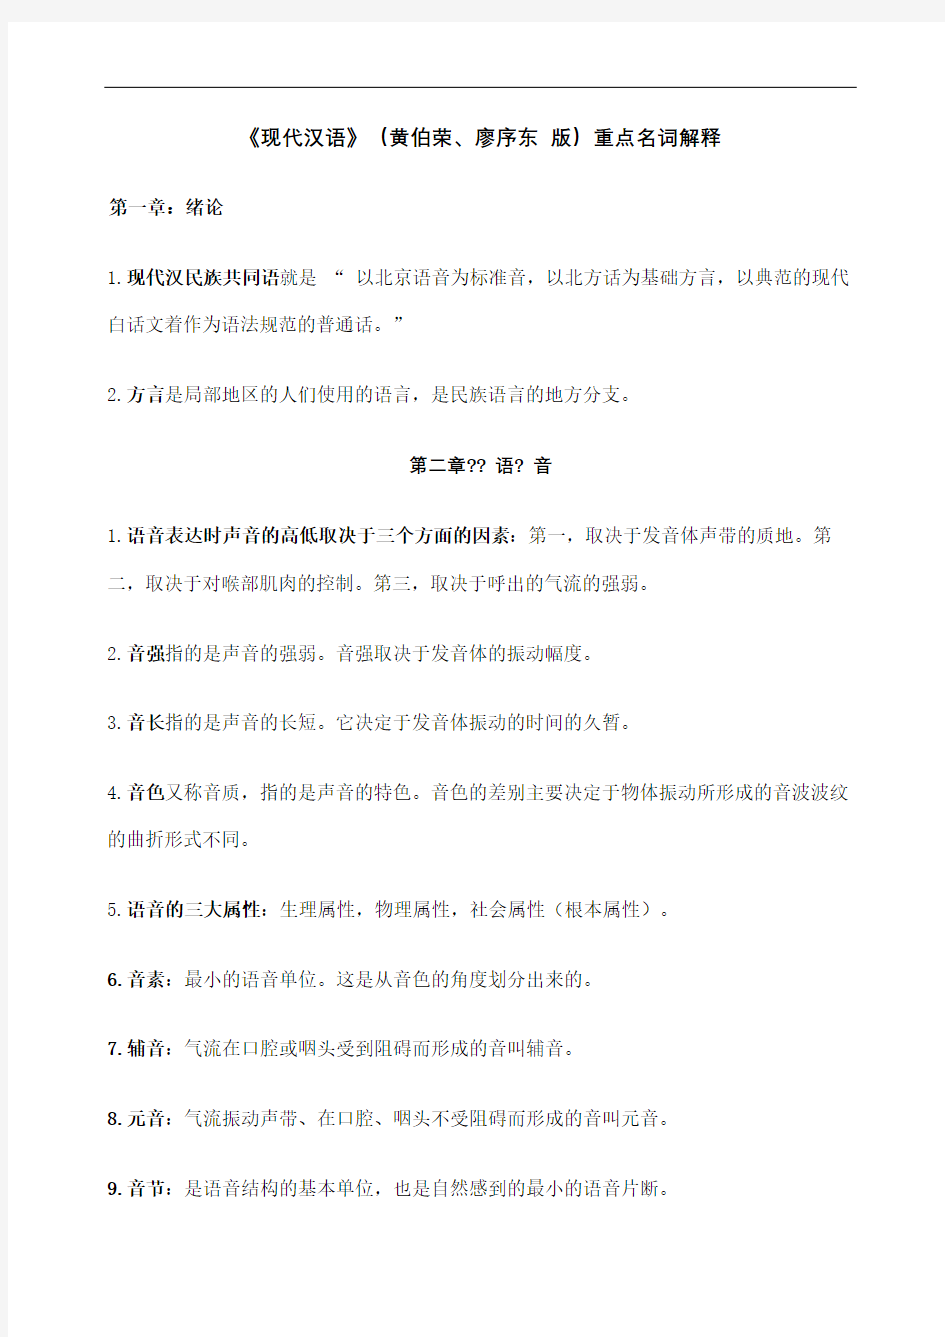 现代汉语名词解释重点黄廖版修订版